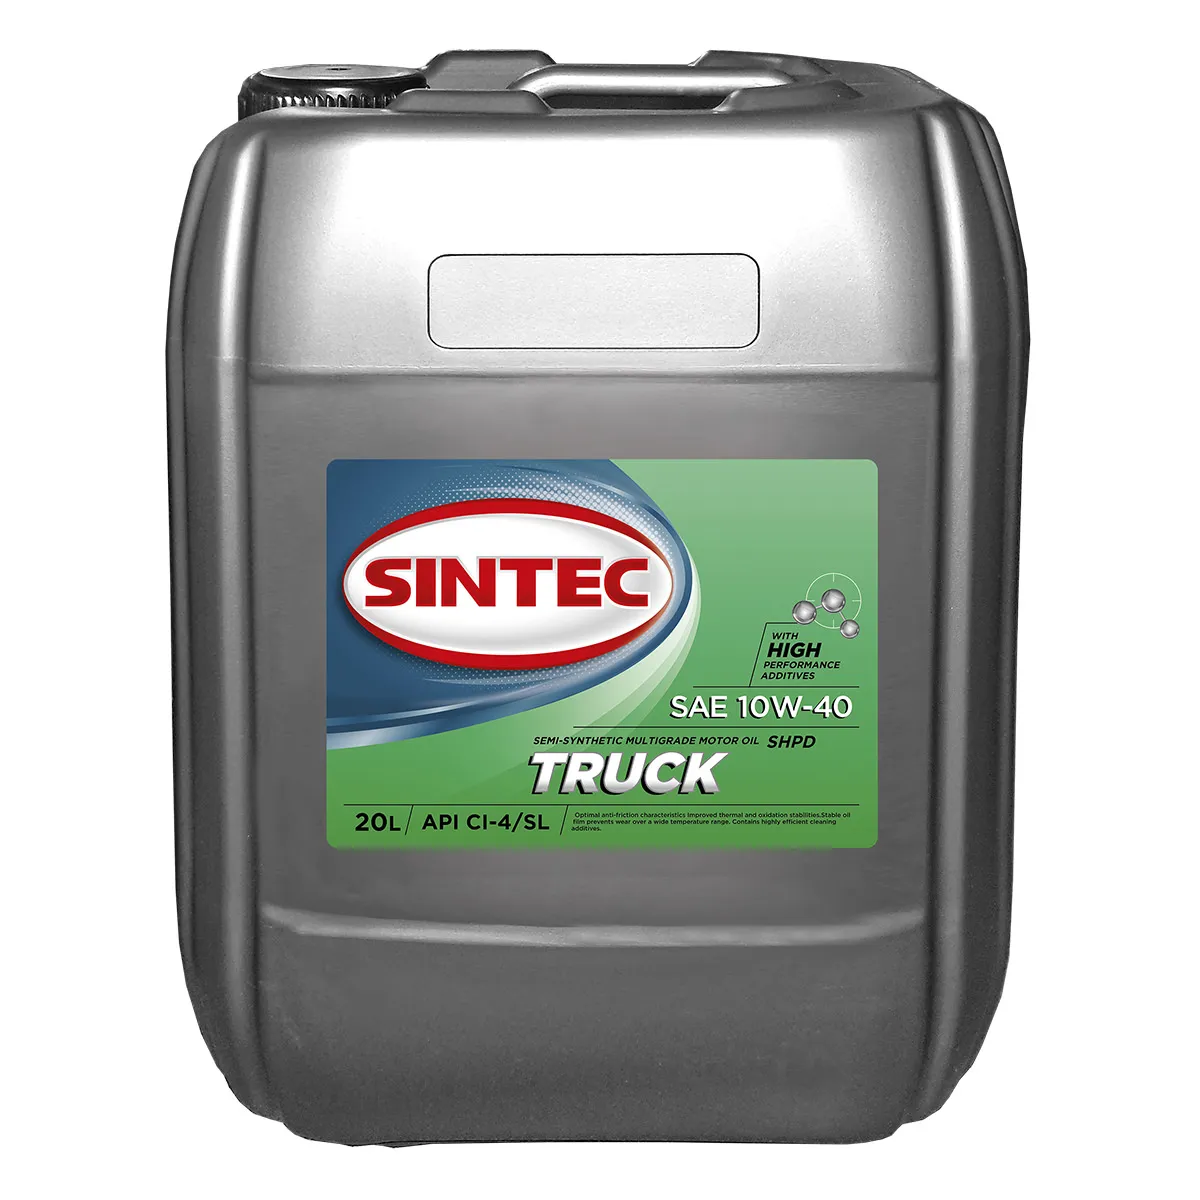 SINTEC TRUCK SAE 10W-40 API CI-4/SL Масла для коммерческой техники: описание, применение, свойства, где
							купить